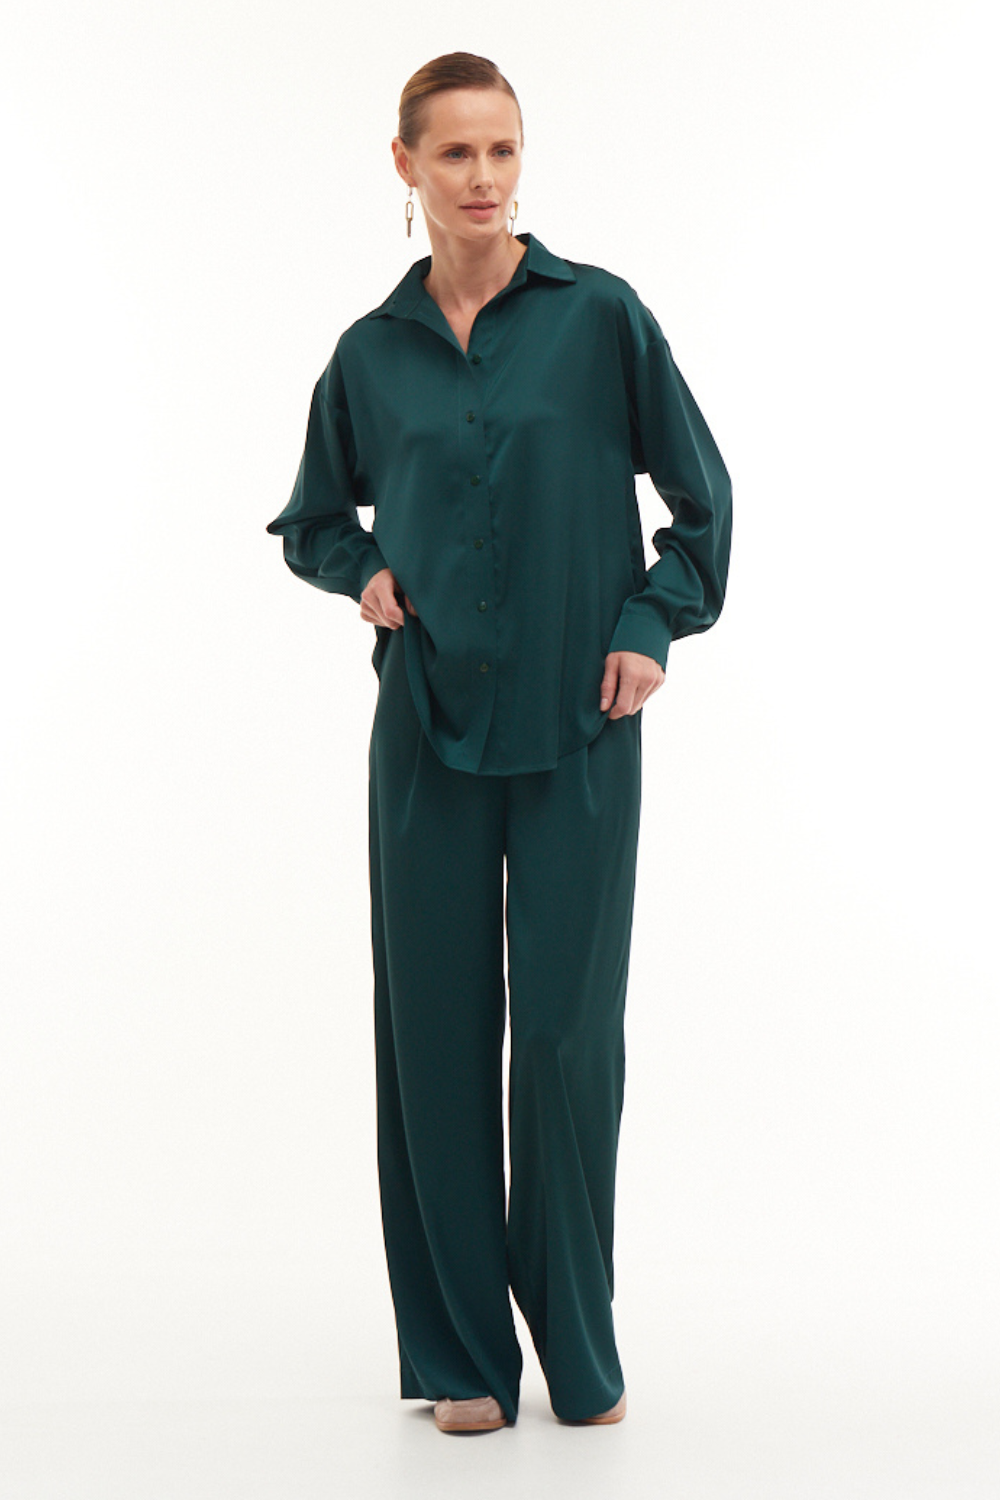 Smaragdové kalhoty BASIC, (Mint), 21628